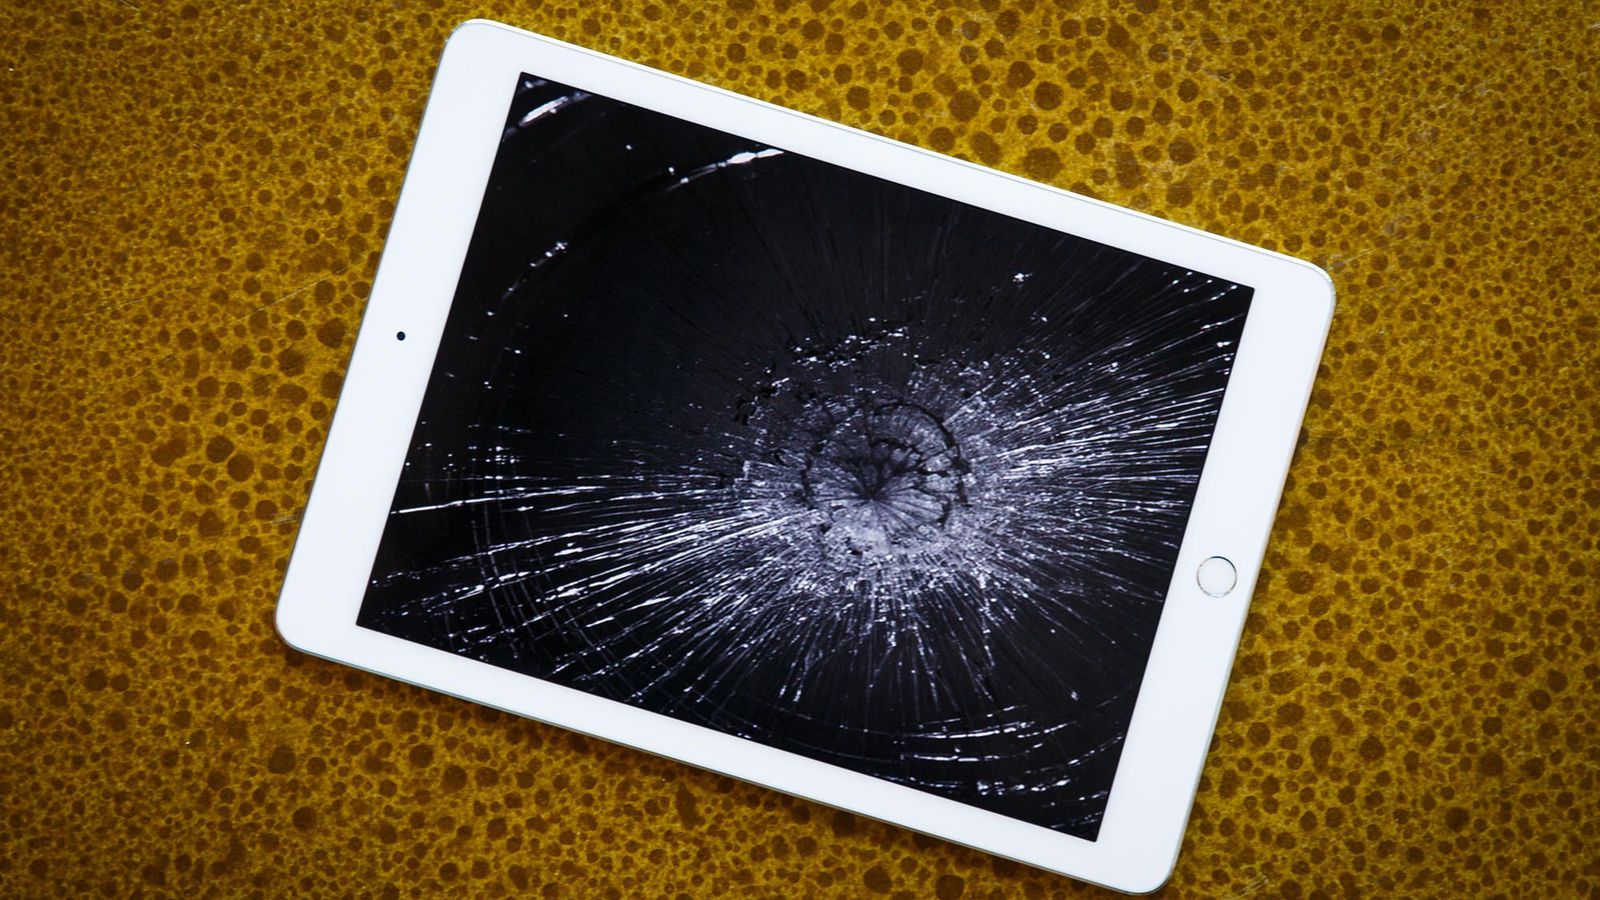 Cracked ipad screen repair cost